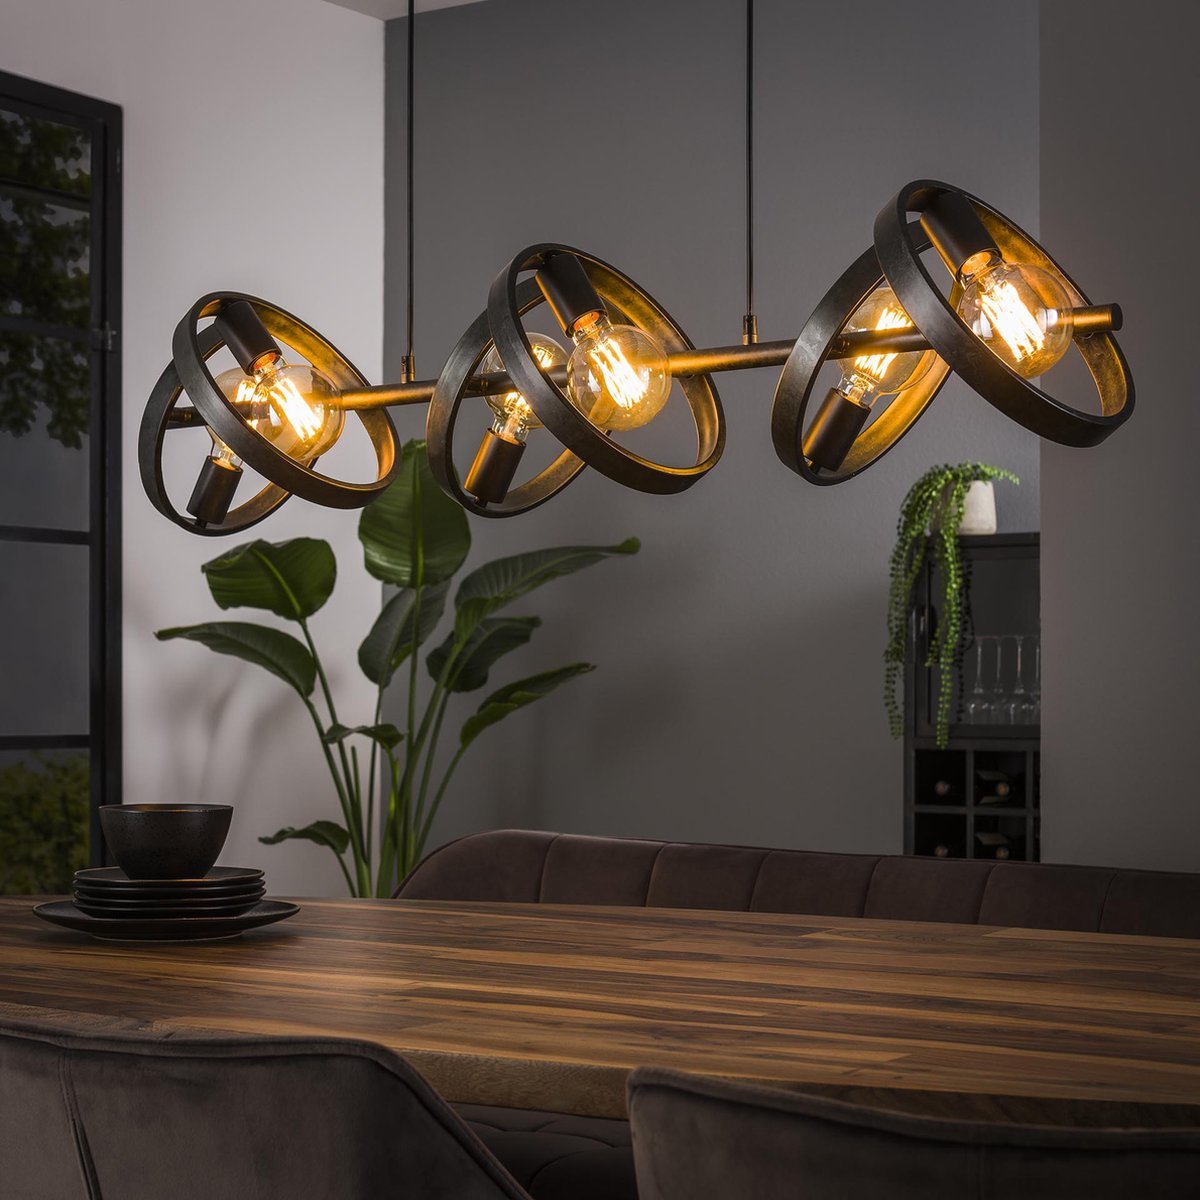 Verstelbare landelijke hanglamp Hover | 6 lichts | charcoal / grijs / zwart | metaal | 120 x 150 cm | Ø 26 cm | eetkamer / eettafel lamp | modern / sfeervol design